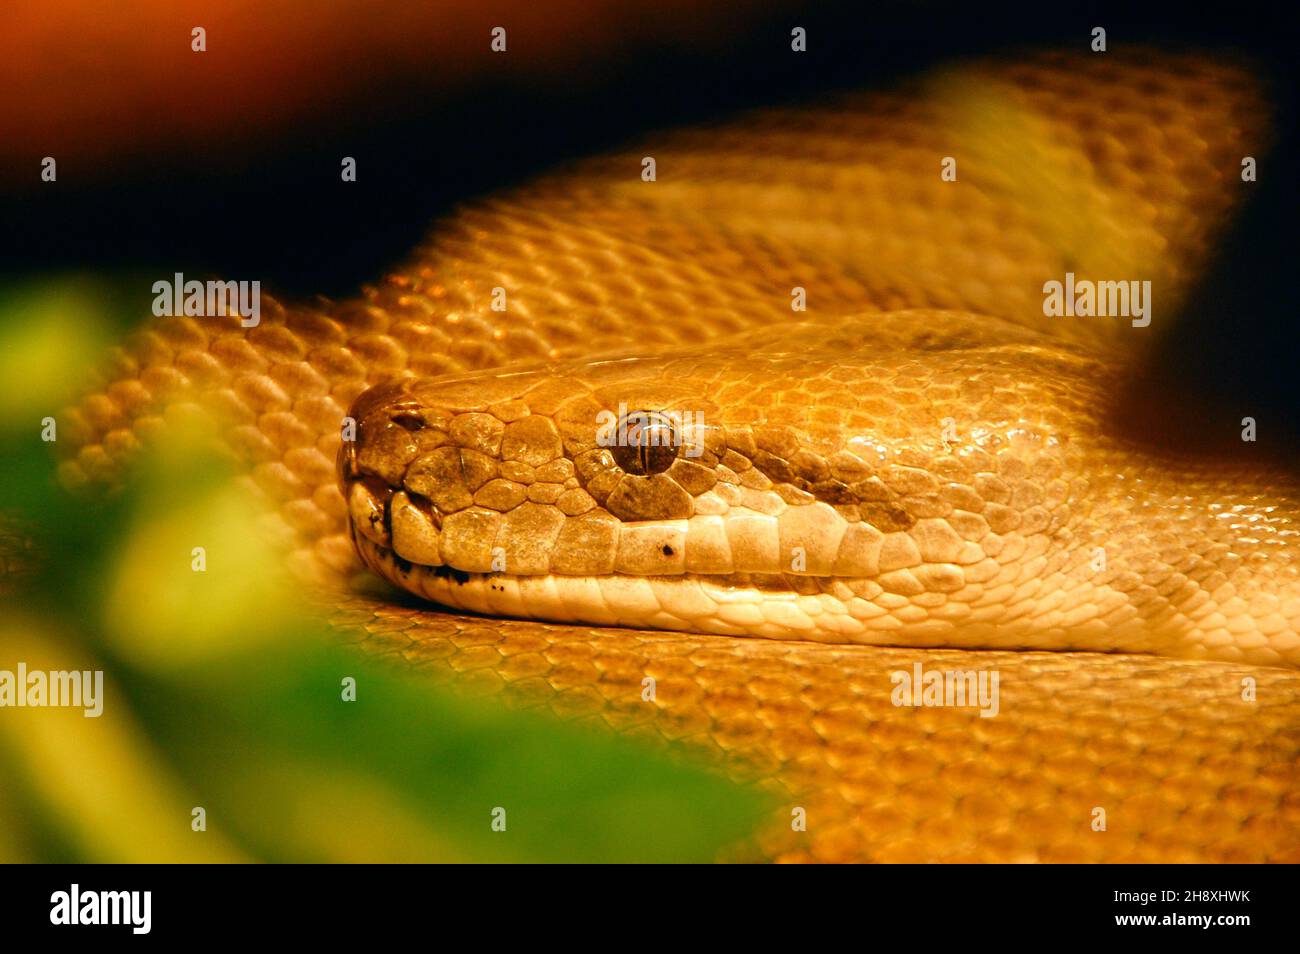 Primo piano della testa del serpente, Python Foto Stock